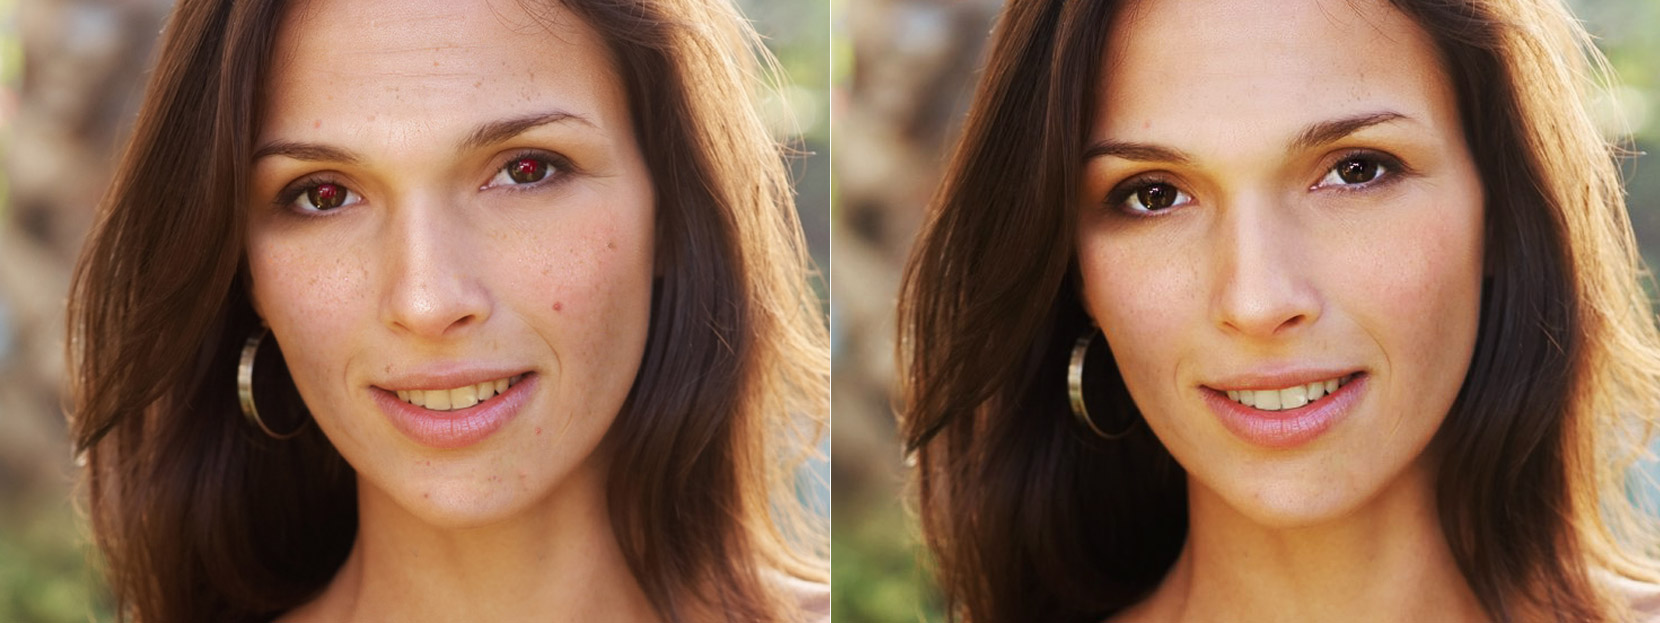 Vor und nach der Gesichtsretusche auf Makeup.Pho.to